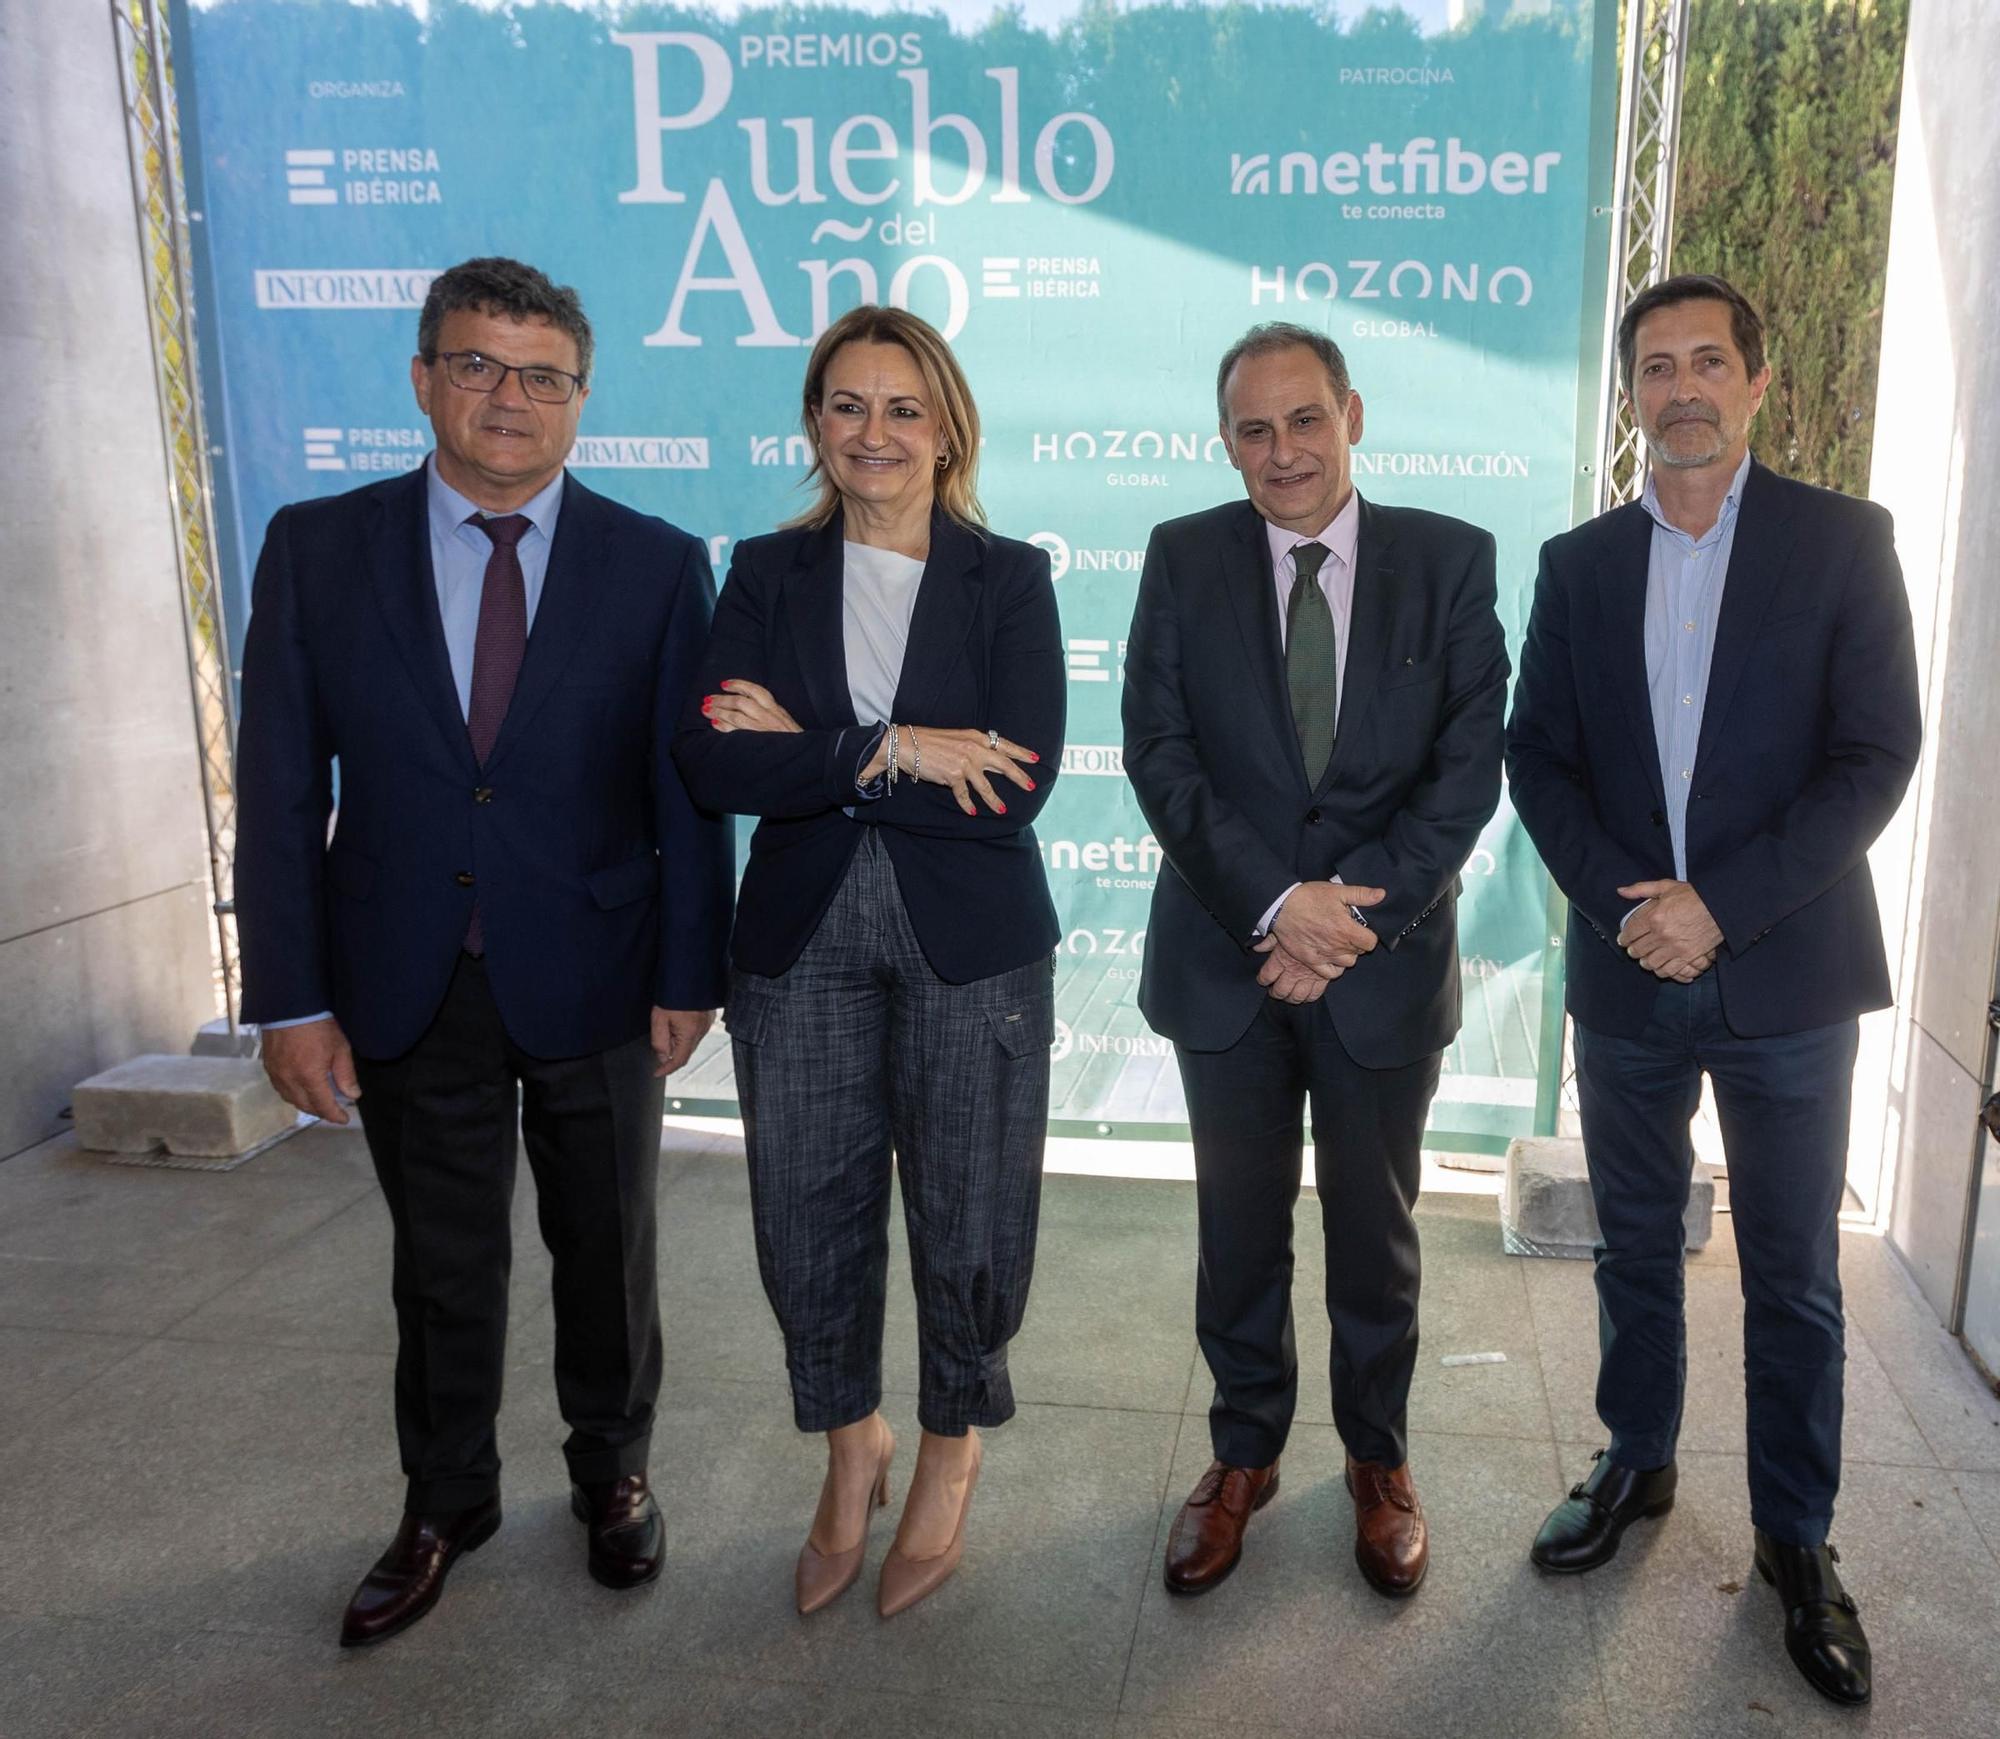 Segunda edición premios Pueblo del Año de Prensa Ibérica y Información